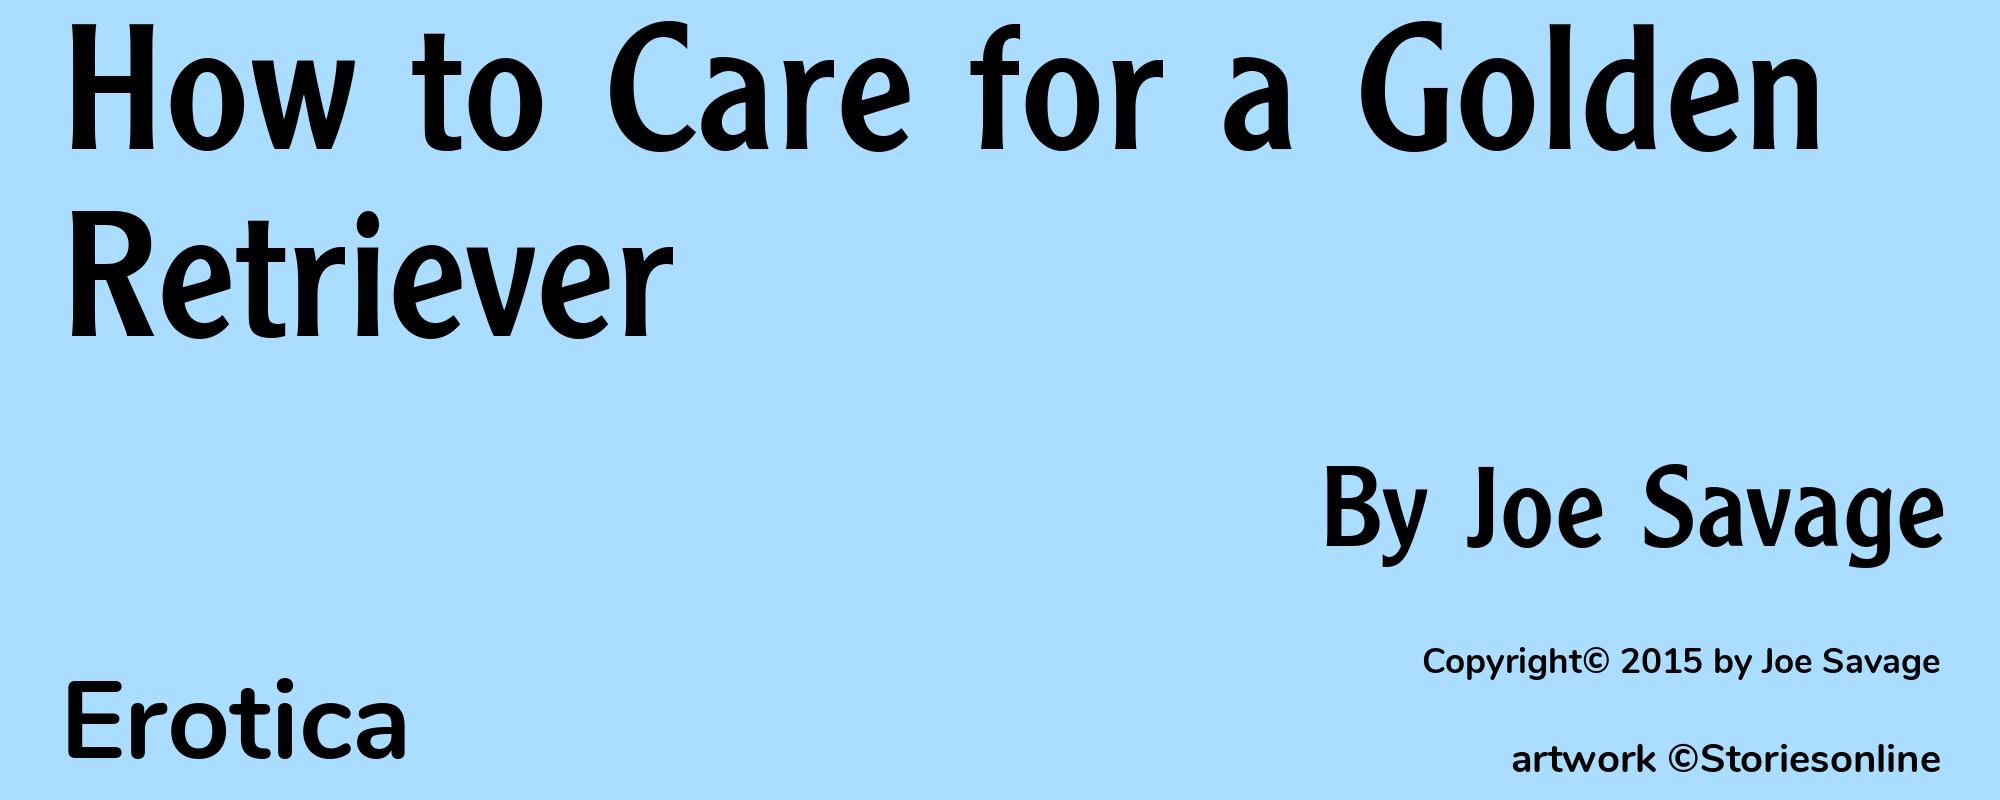 How to Care for a Golden Retriever - Cover